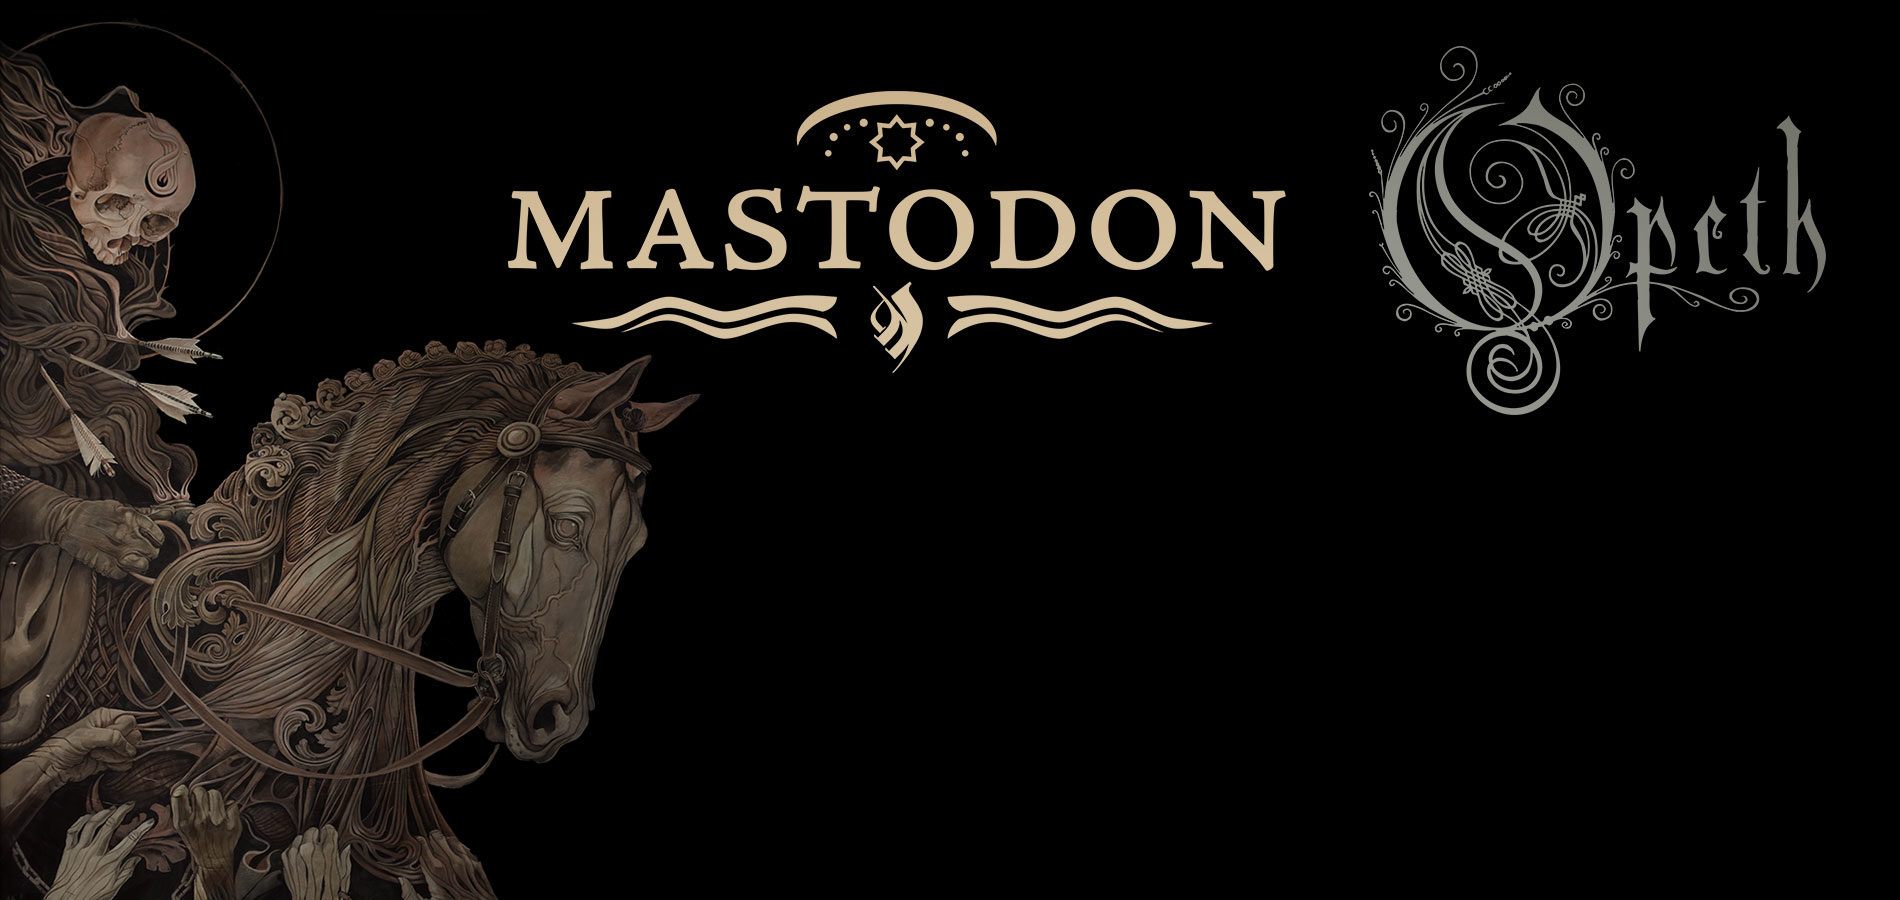 Mastodon / Opeth